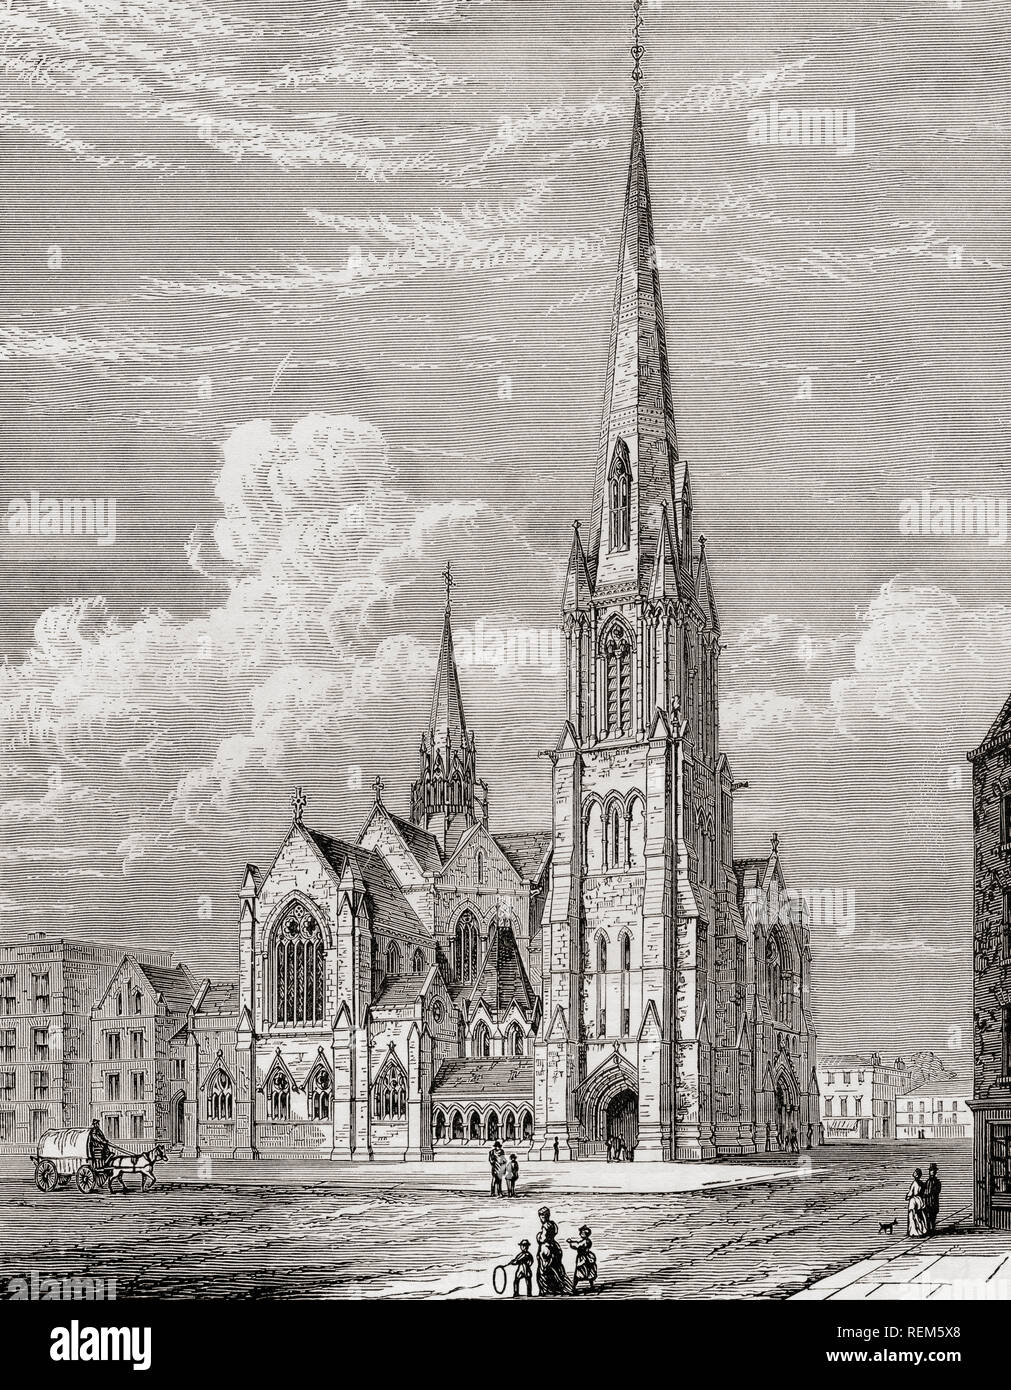 Christ Church, Westminster Bridge Road, Lambeth, Londres, Angleterre, vu ici au 19e siècle. Photos de Londres, publié 1890 Banque D'Images